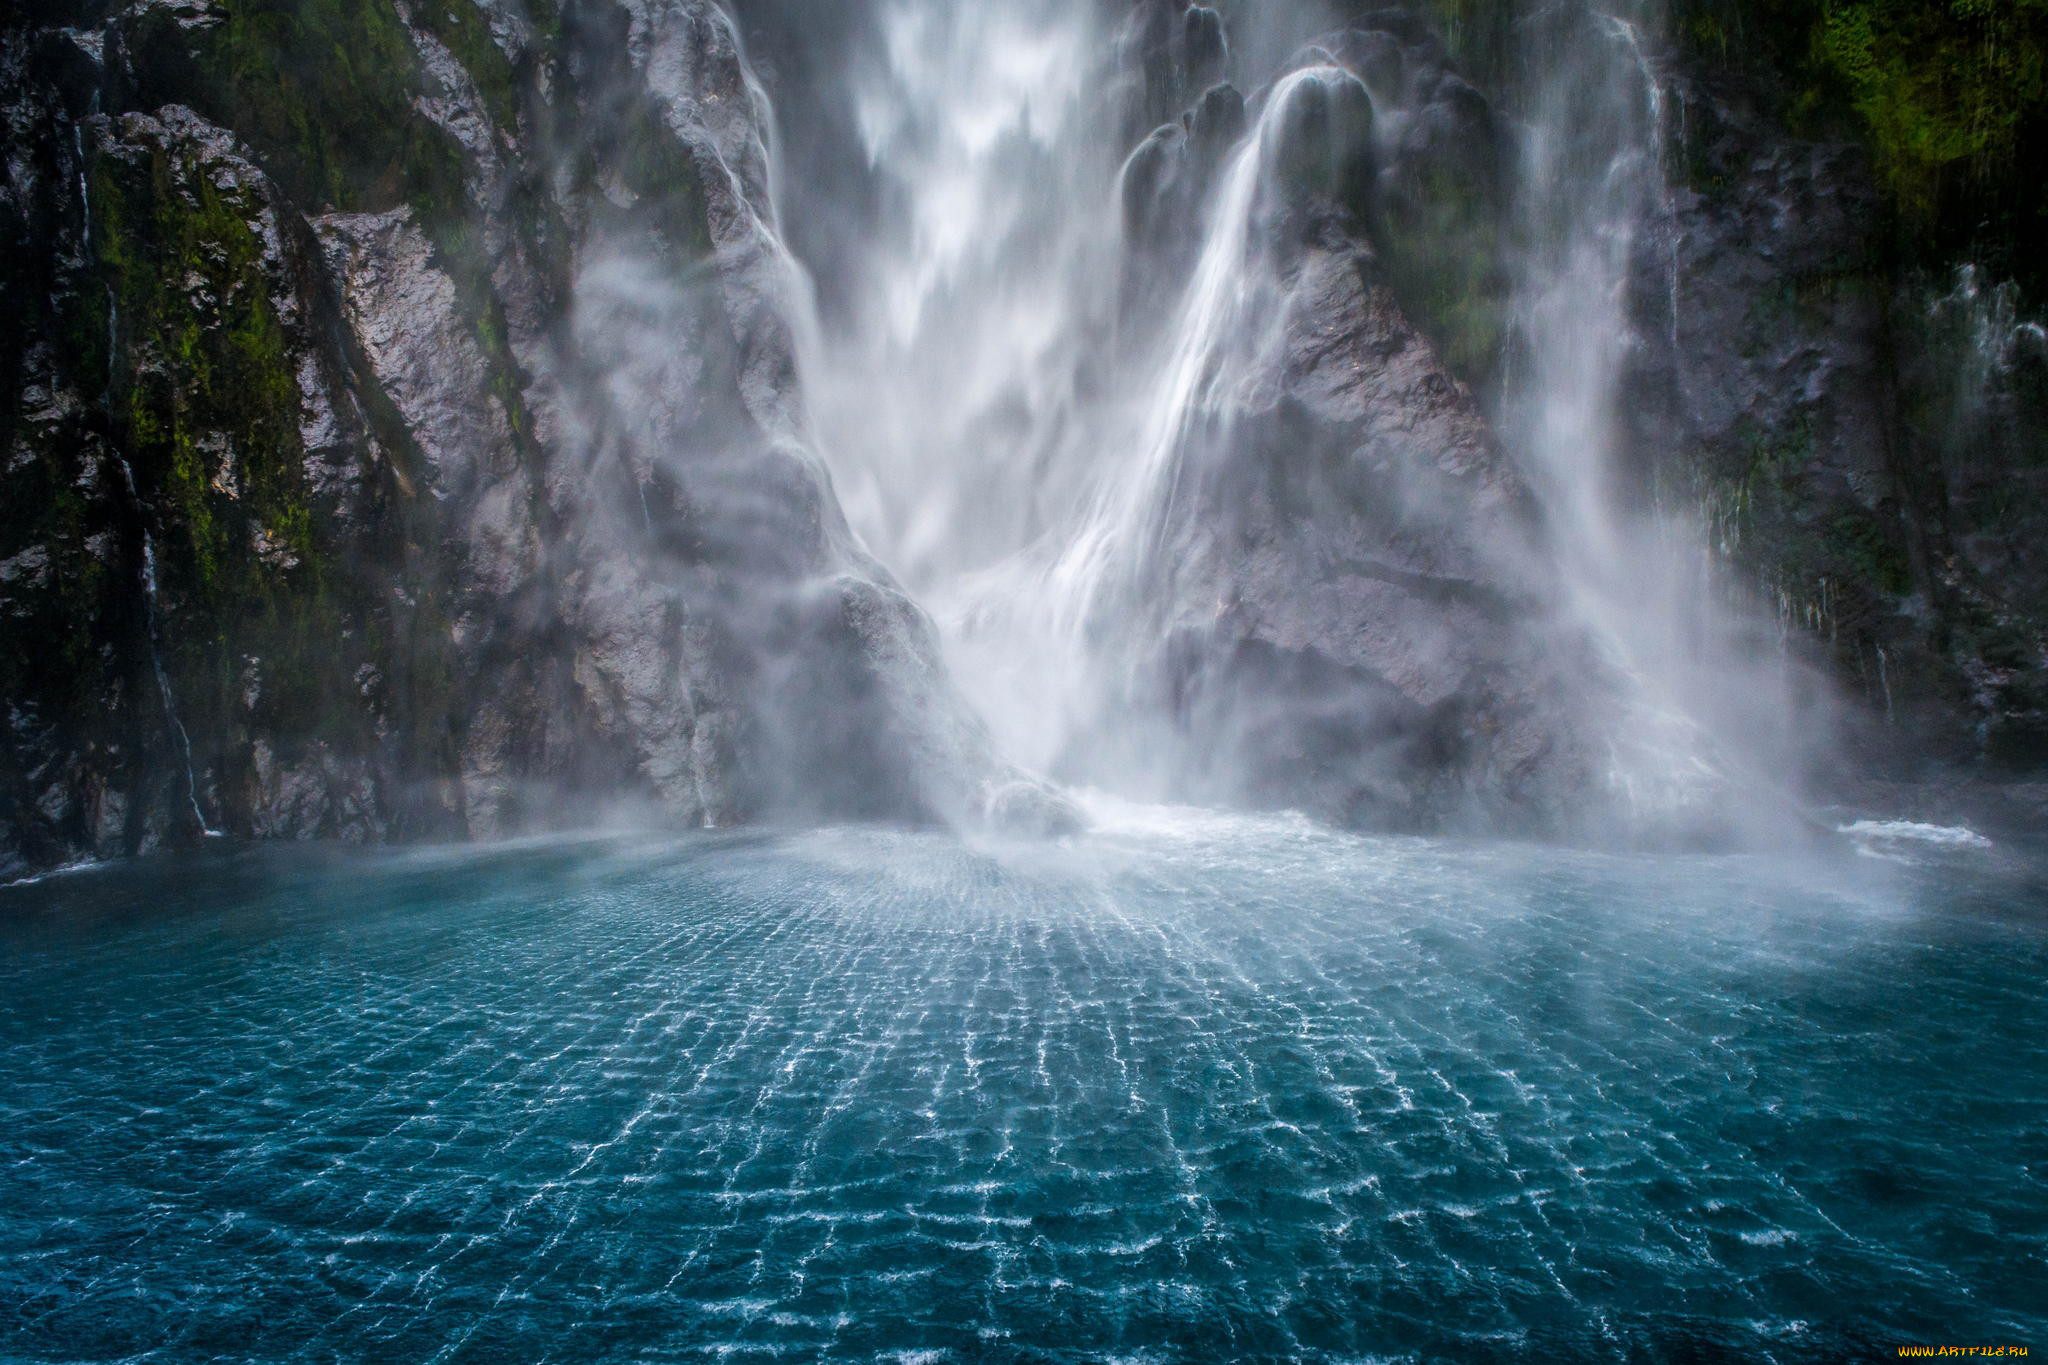 Красивые изображения. Водопад « голубая Лагуна» ( г.холм). Милфорд саунд обратные водопады. Водопад Фэнго. Водопад Нгалиема.